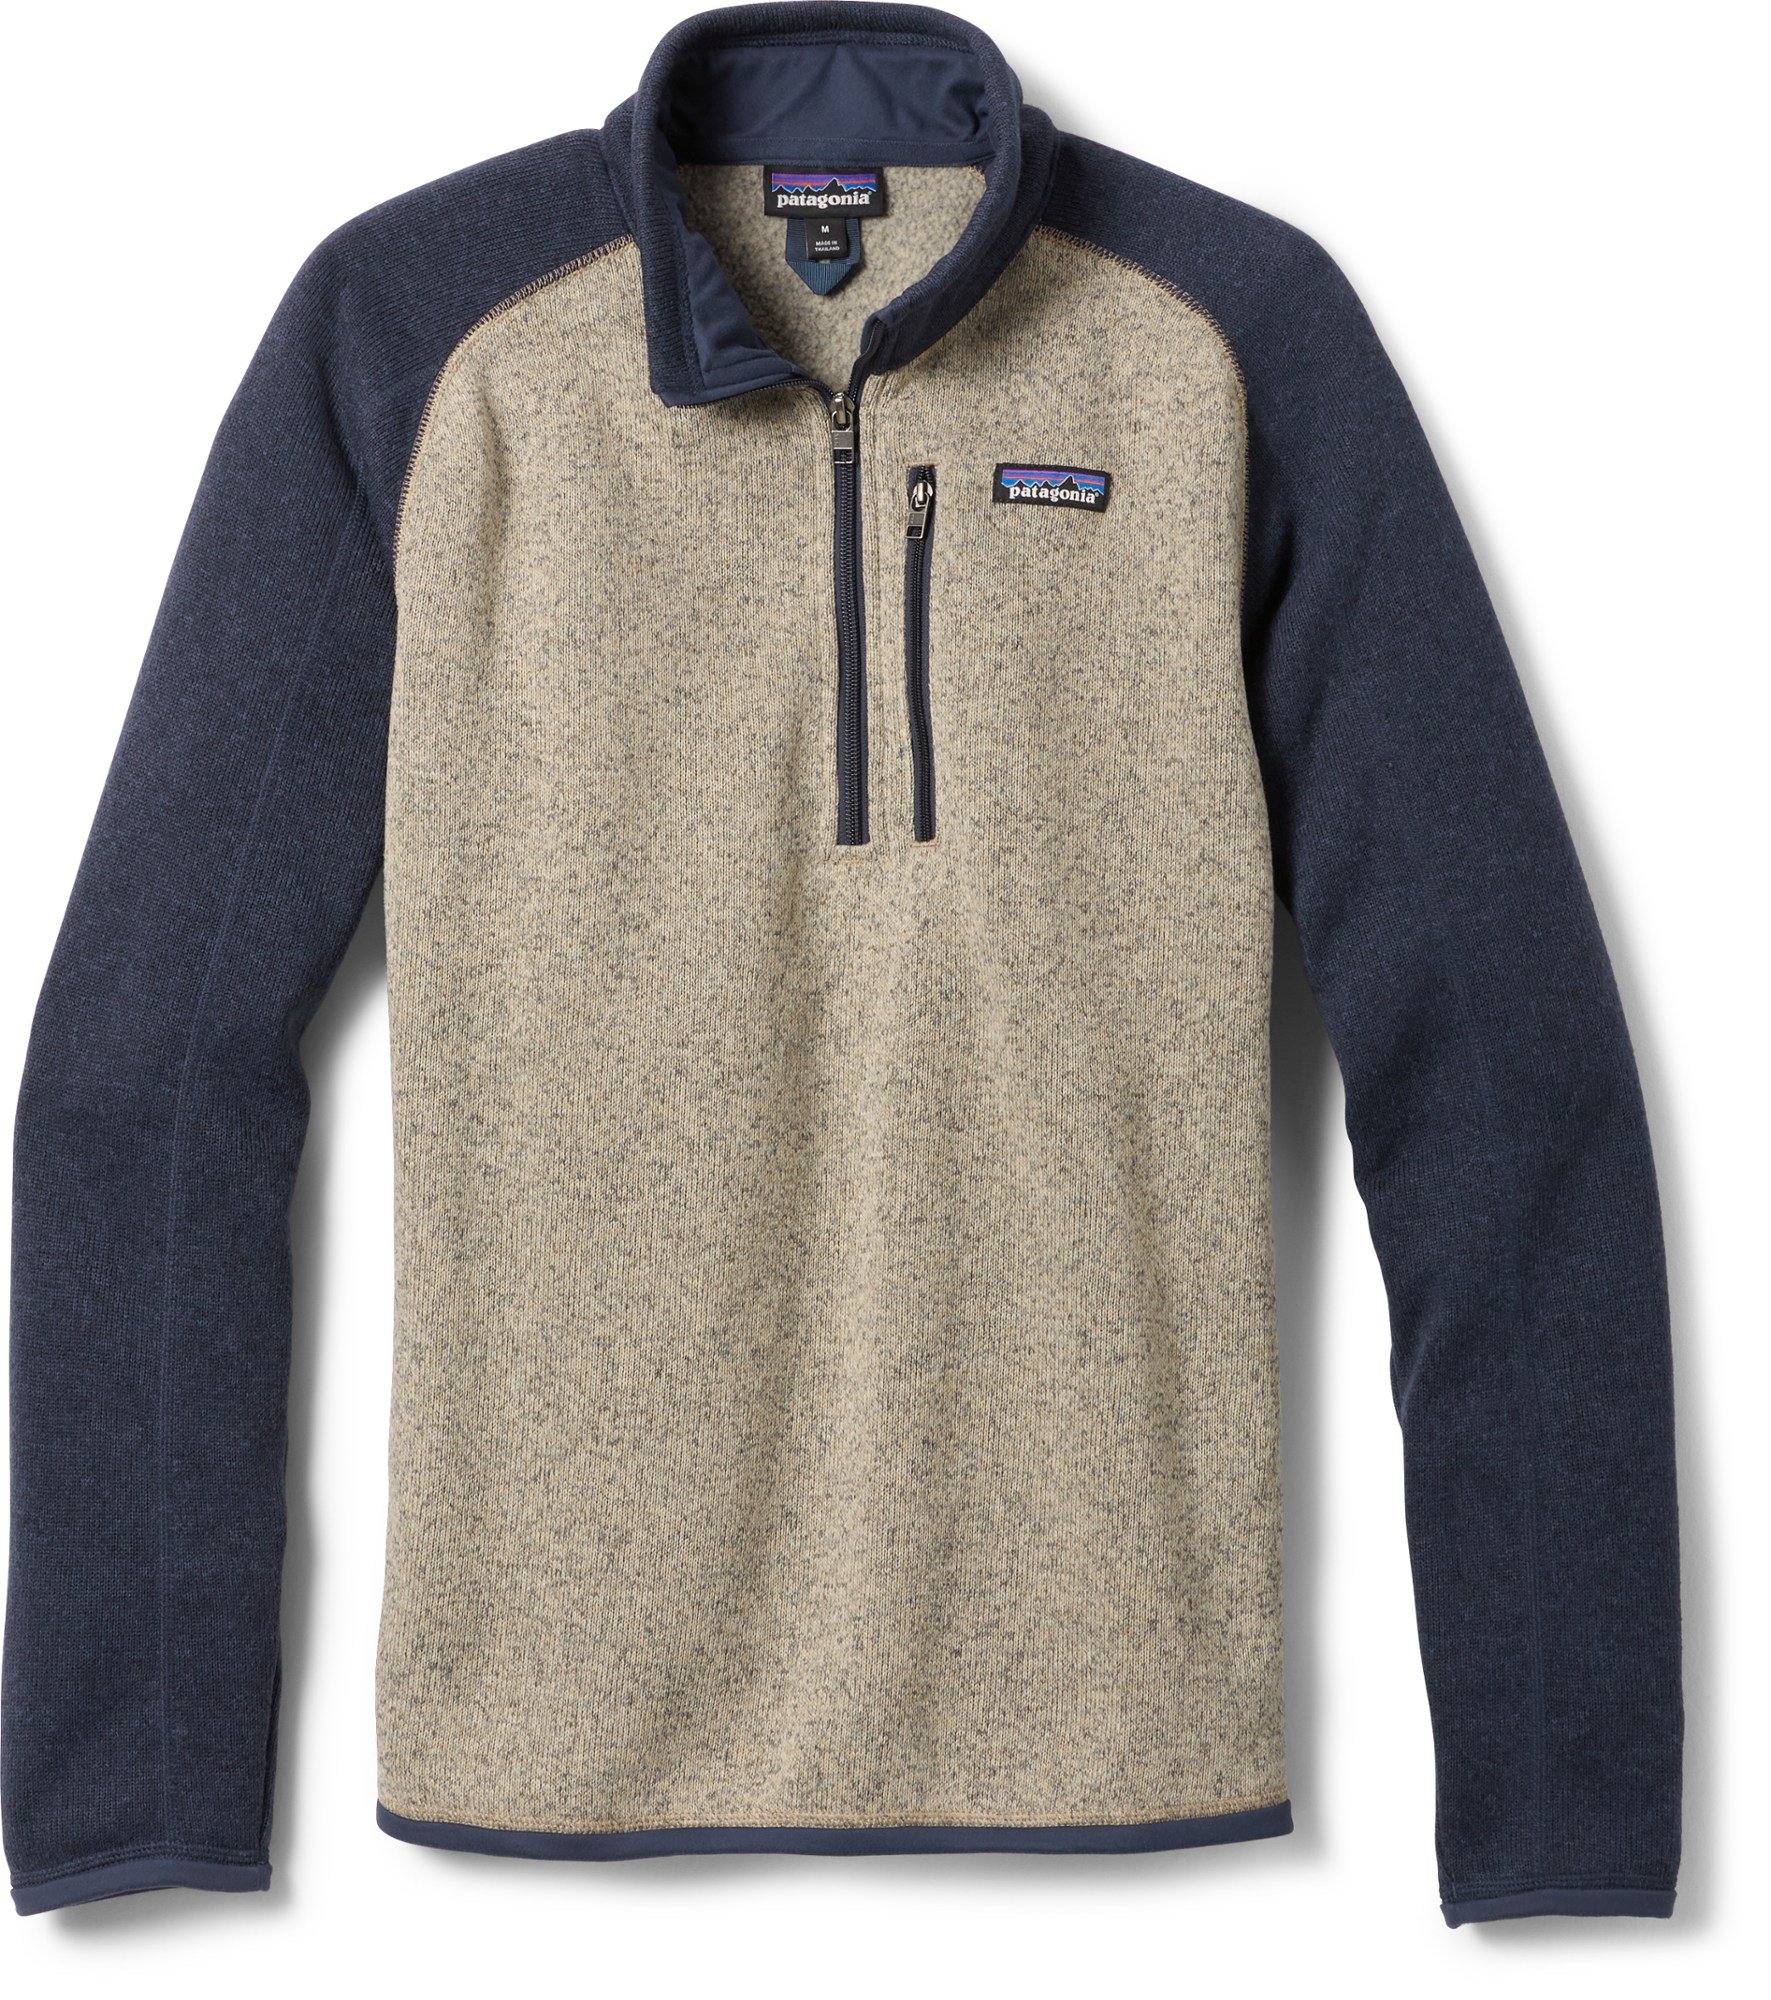 Флисовый пуловер Better Sweater с молнией в четверть — мужской Patagonia, хаки